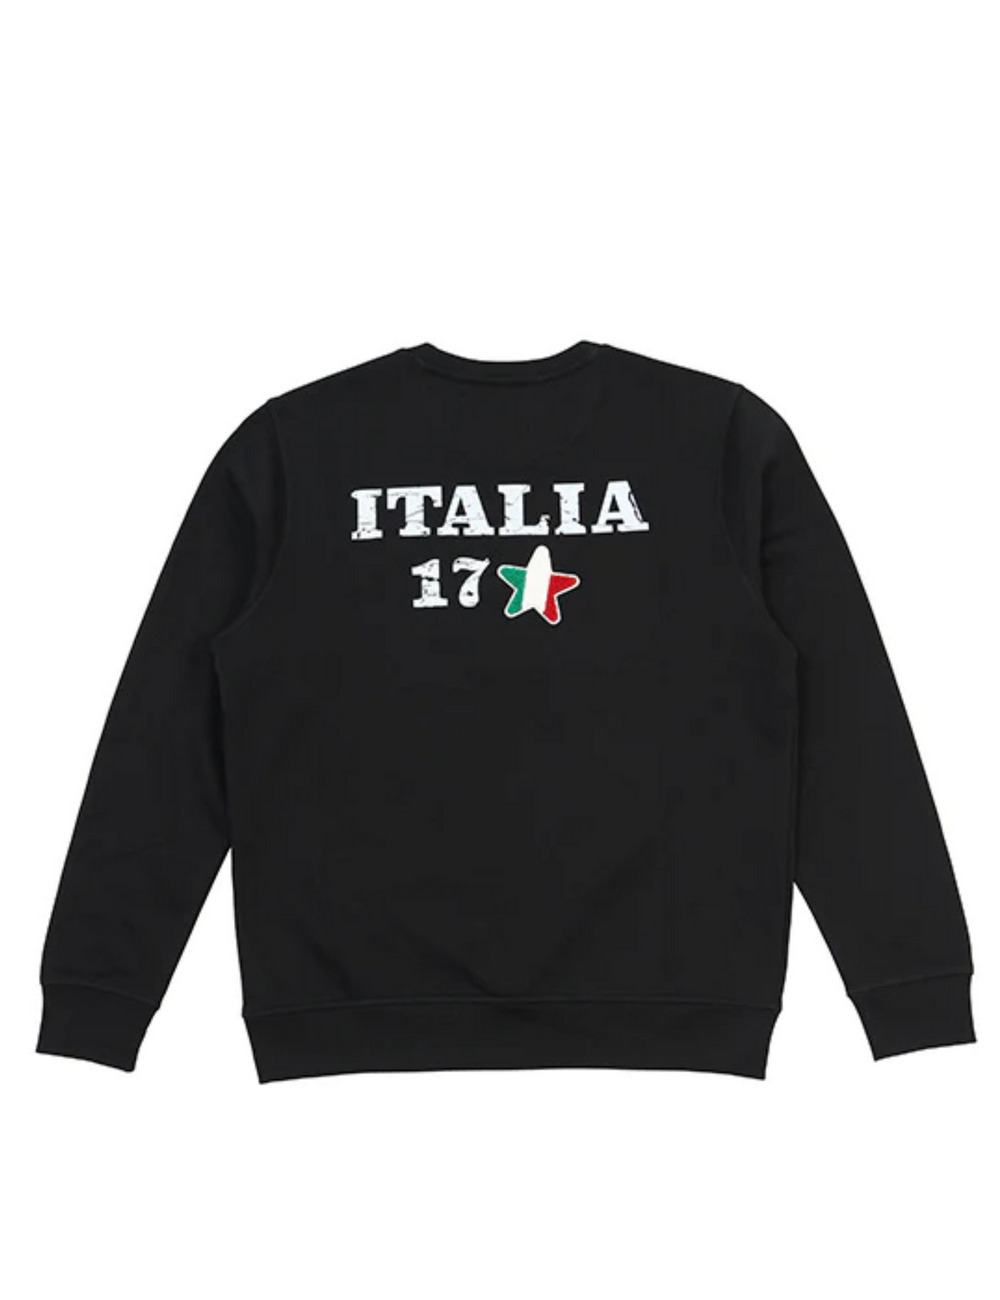 イタリア17スウェットシャツ / ITALIA 17 SWEATSHIRT 詳細画像 ブラック 2